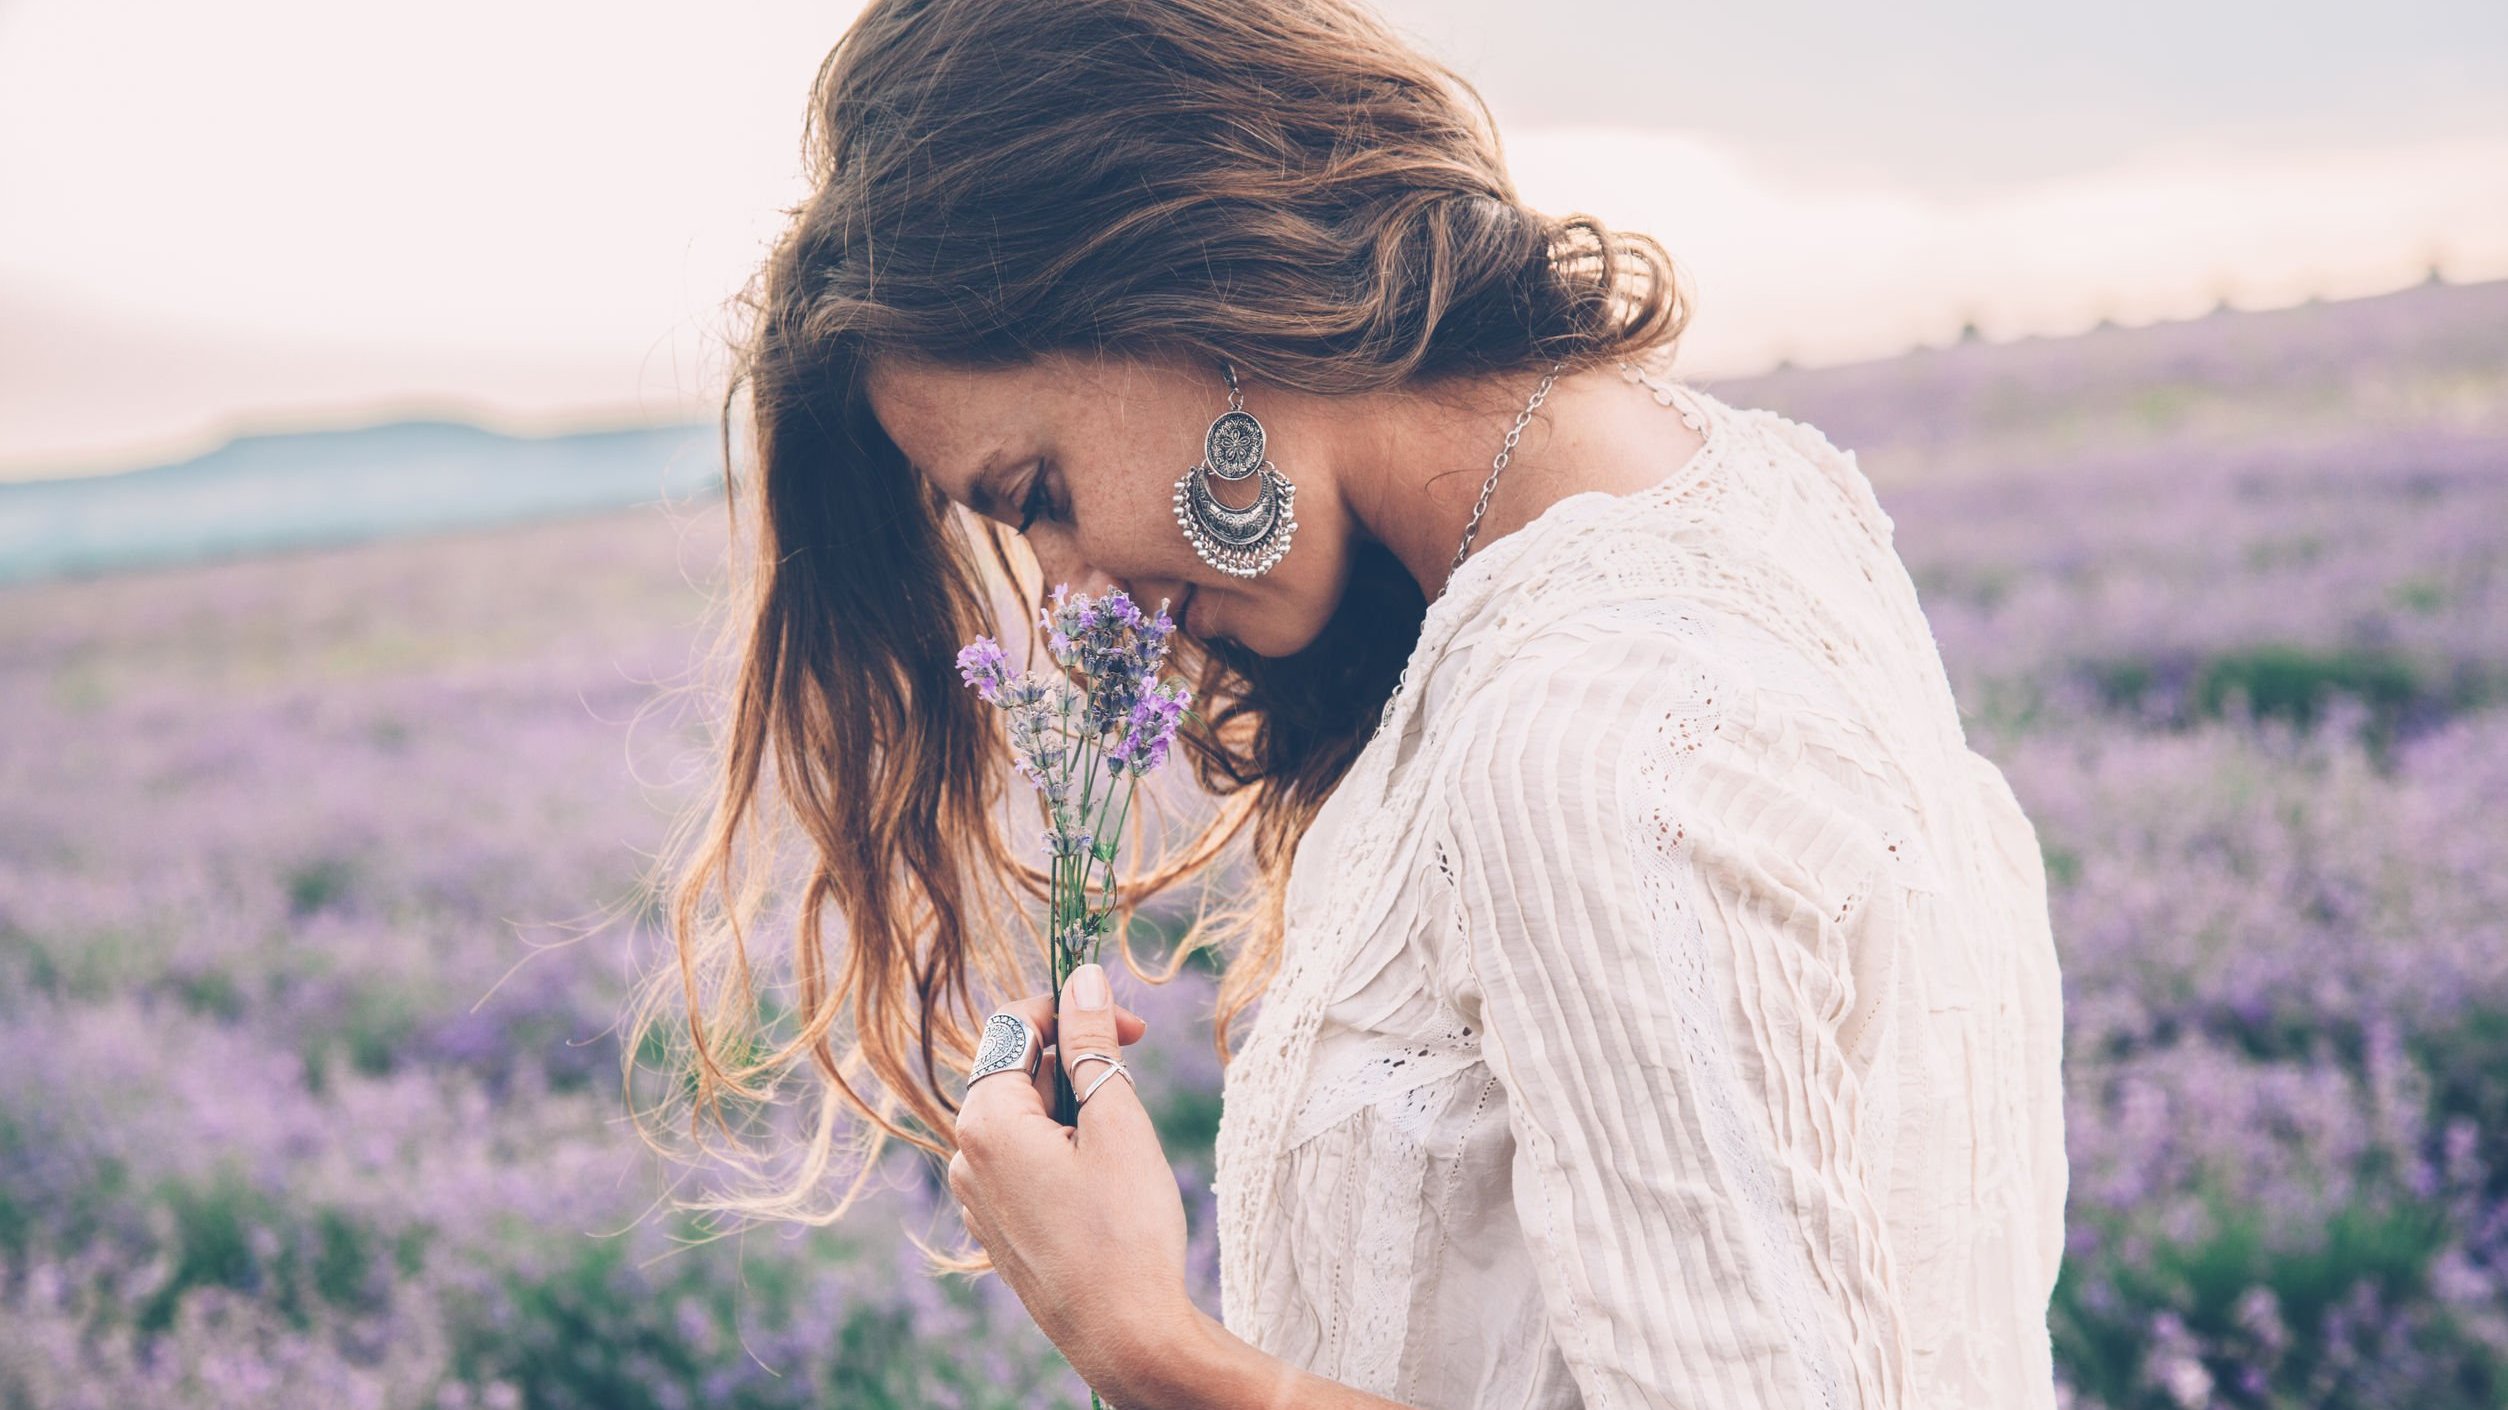 Mulher em um campo de flores, segurando uma flor e a cheirando